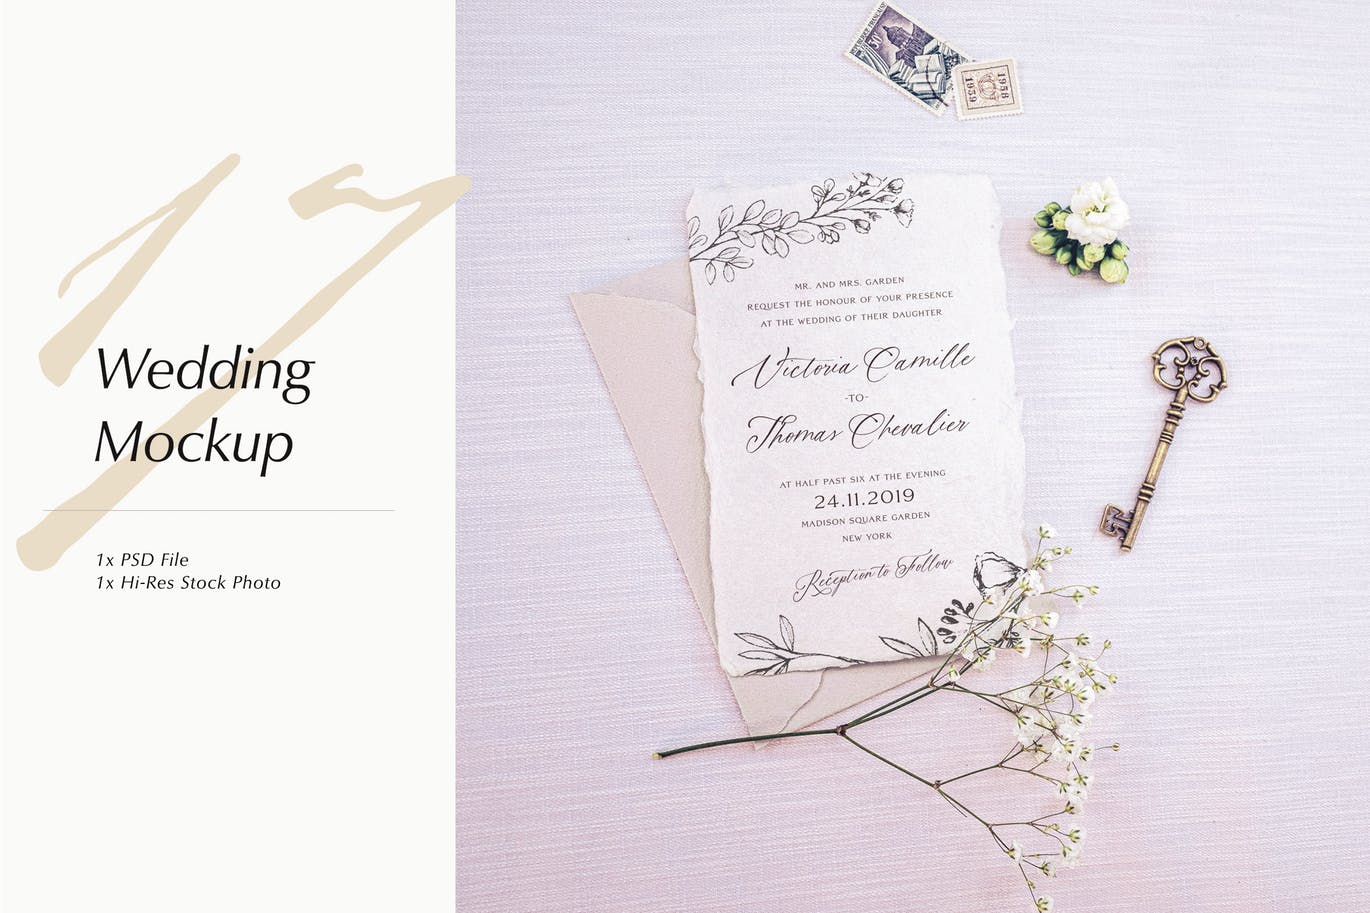 婚礼照片婚礼邀请函优雅风格设计样机素材中国精选模板v17 Wedding Photo Mockup 17插图